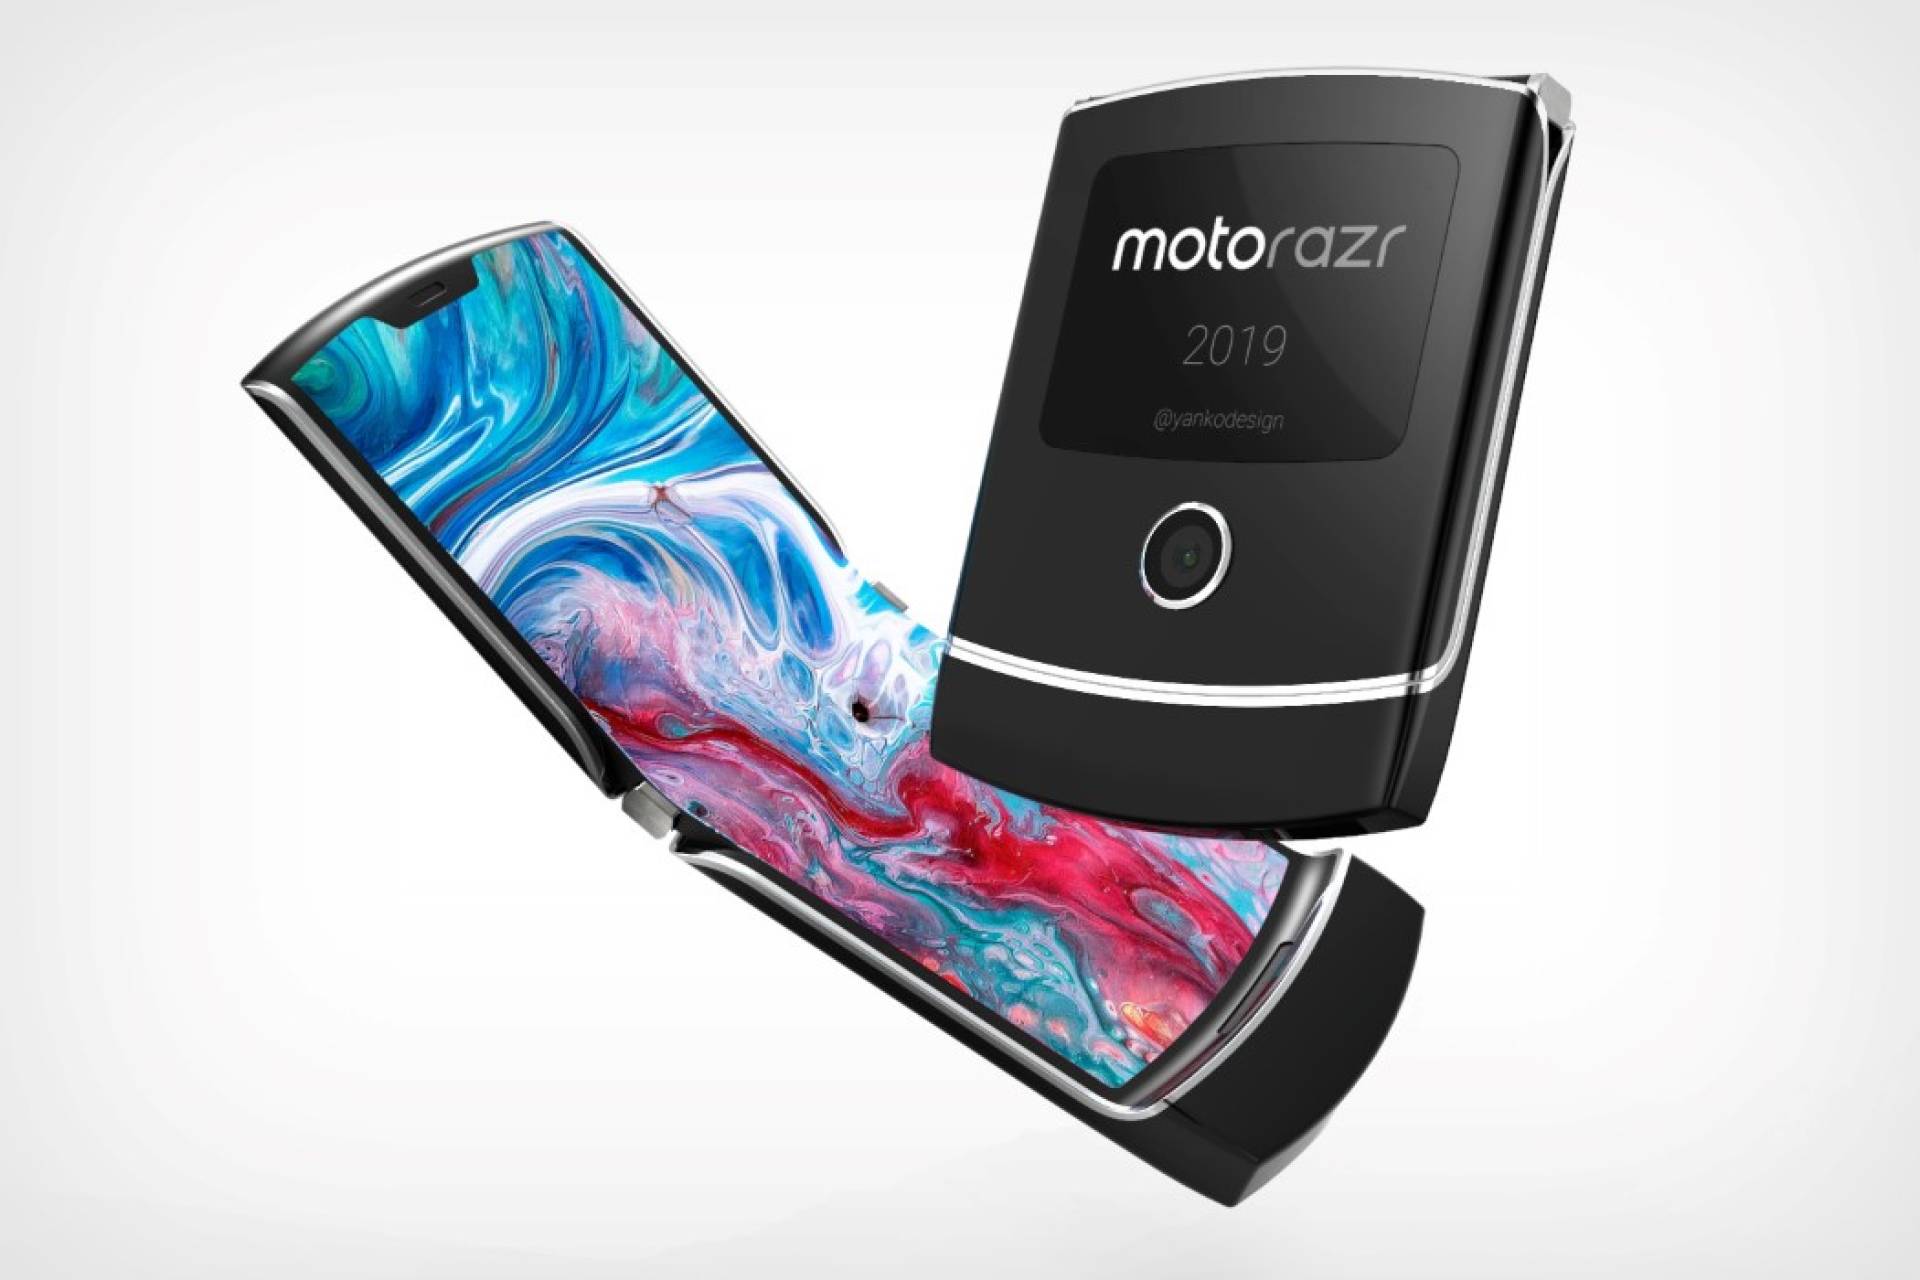  Анонс Motorola Razr все ближе и ближе Другие устройства  - motorola-razr-21228.1920x1080